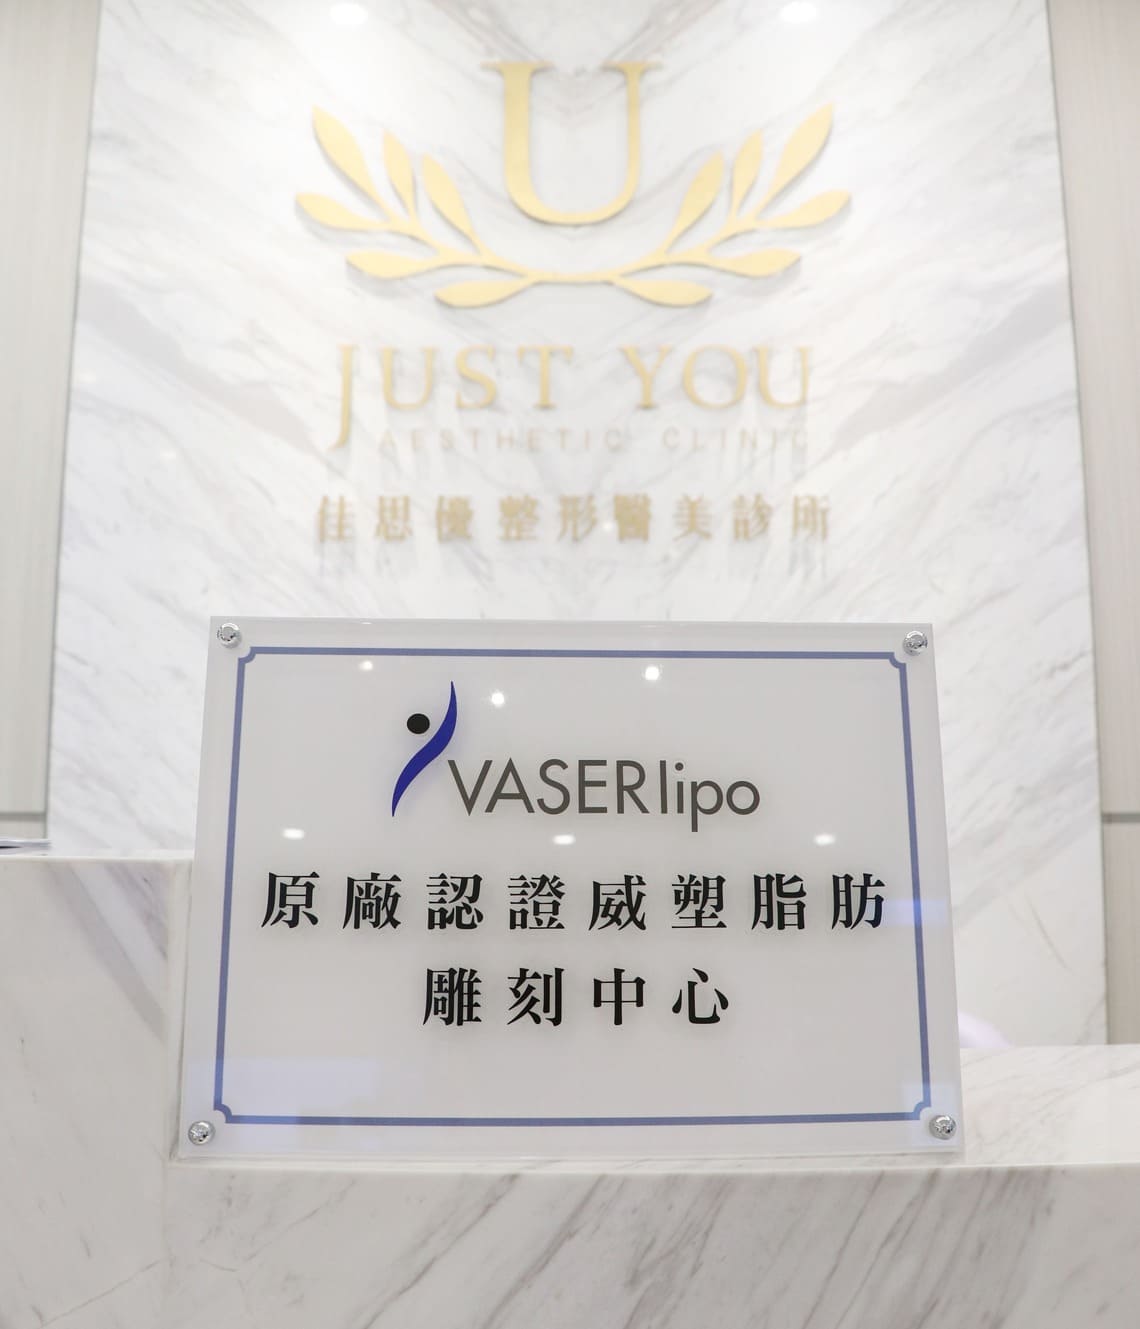 VASER2.2 原厂认证威塑脂肪雕刻中心佳思优整形医美诊所李兆翔医师